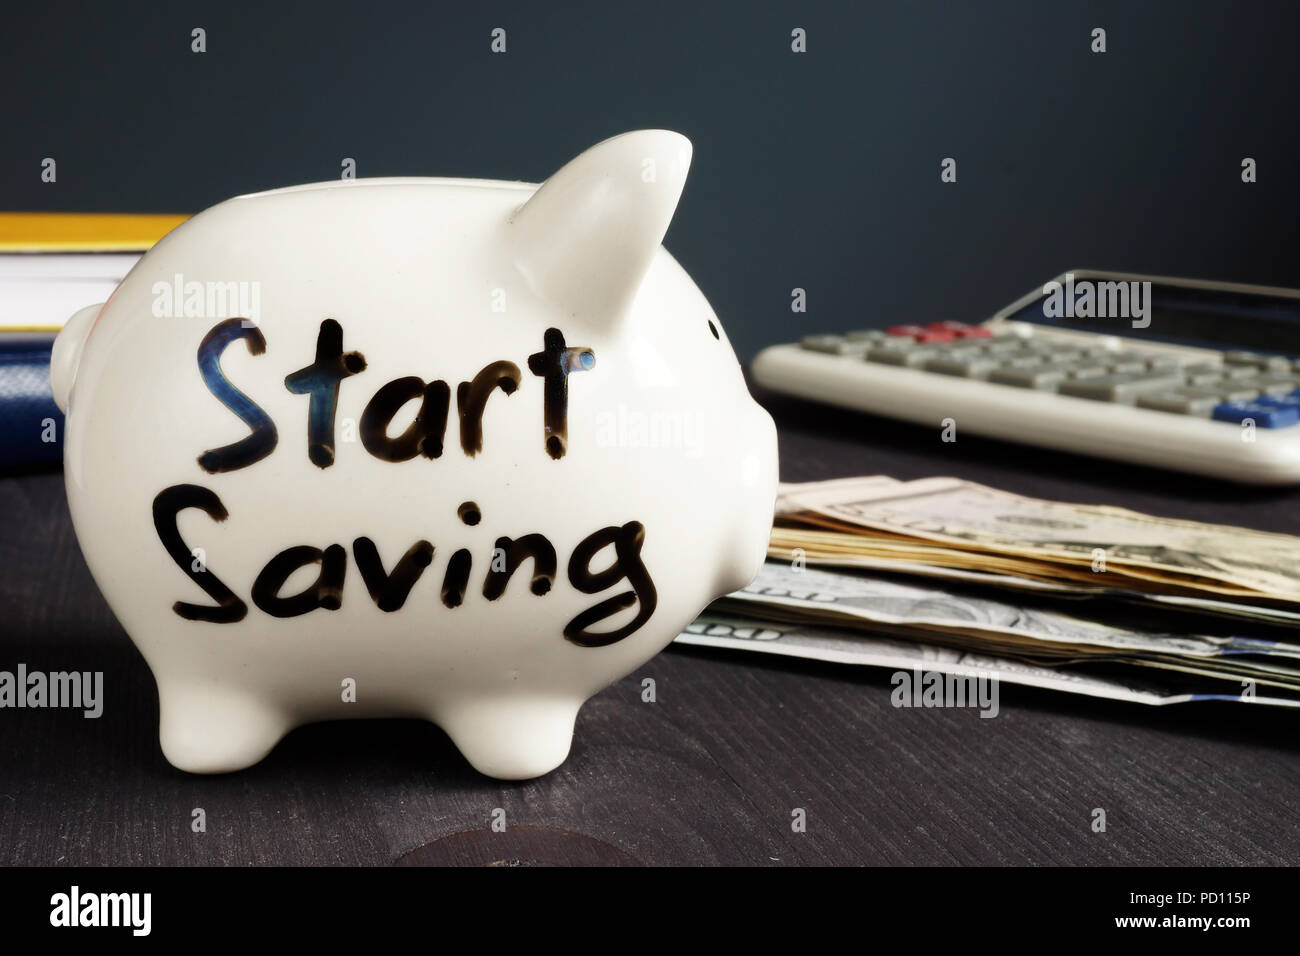 Start Saving written on a piggy bank and money. Stock Photo